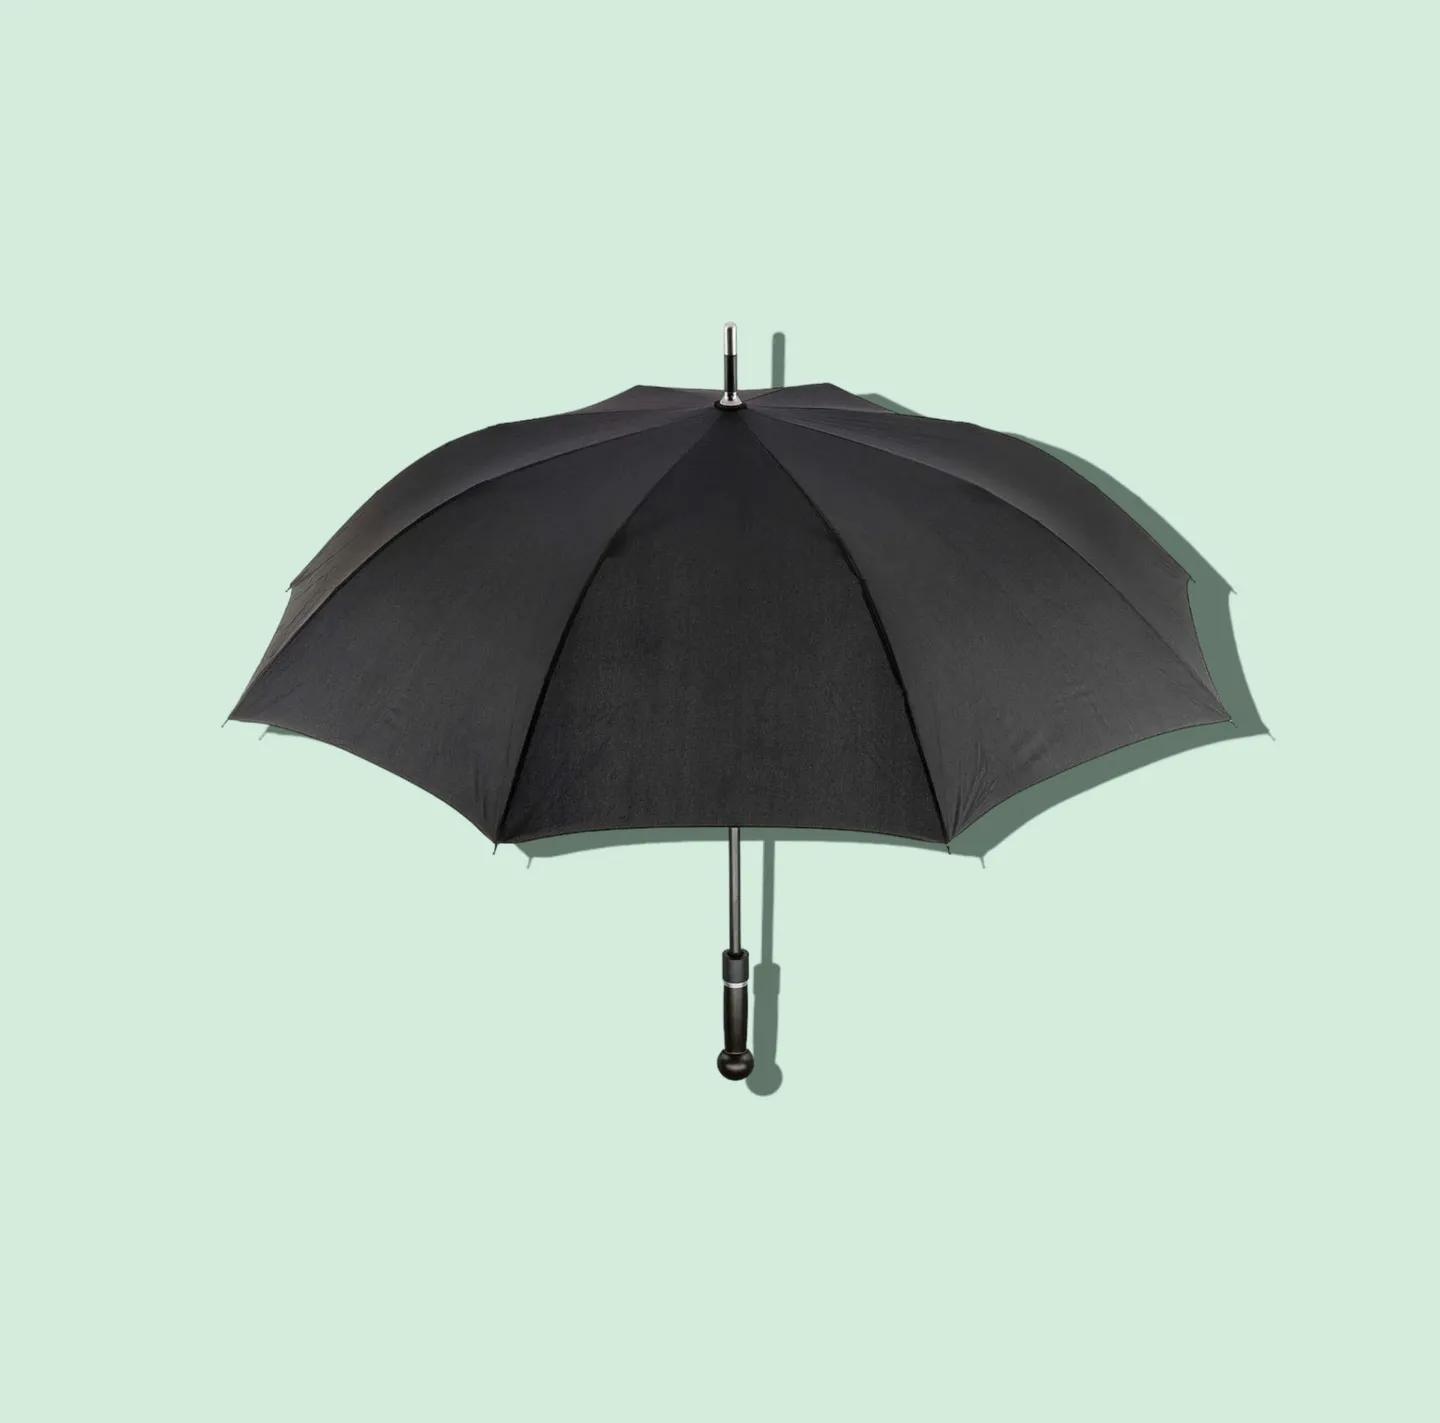 Porras y Bastones - El paraguas de defensa irrompible de 90 cm - Street Angel